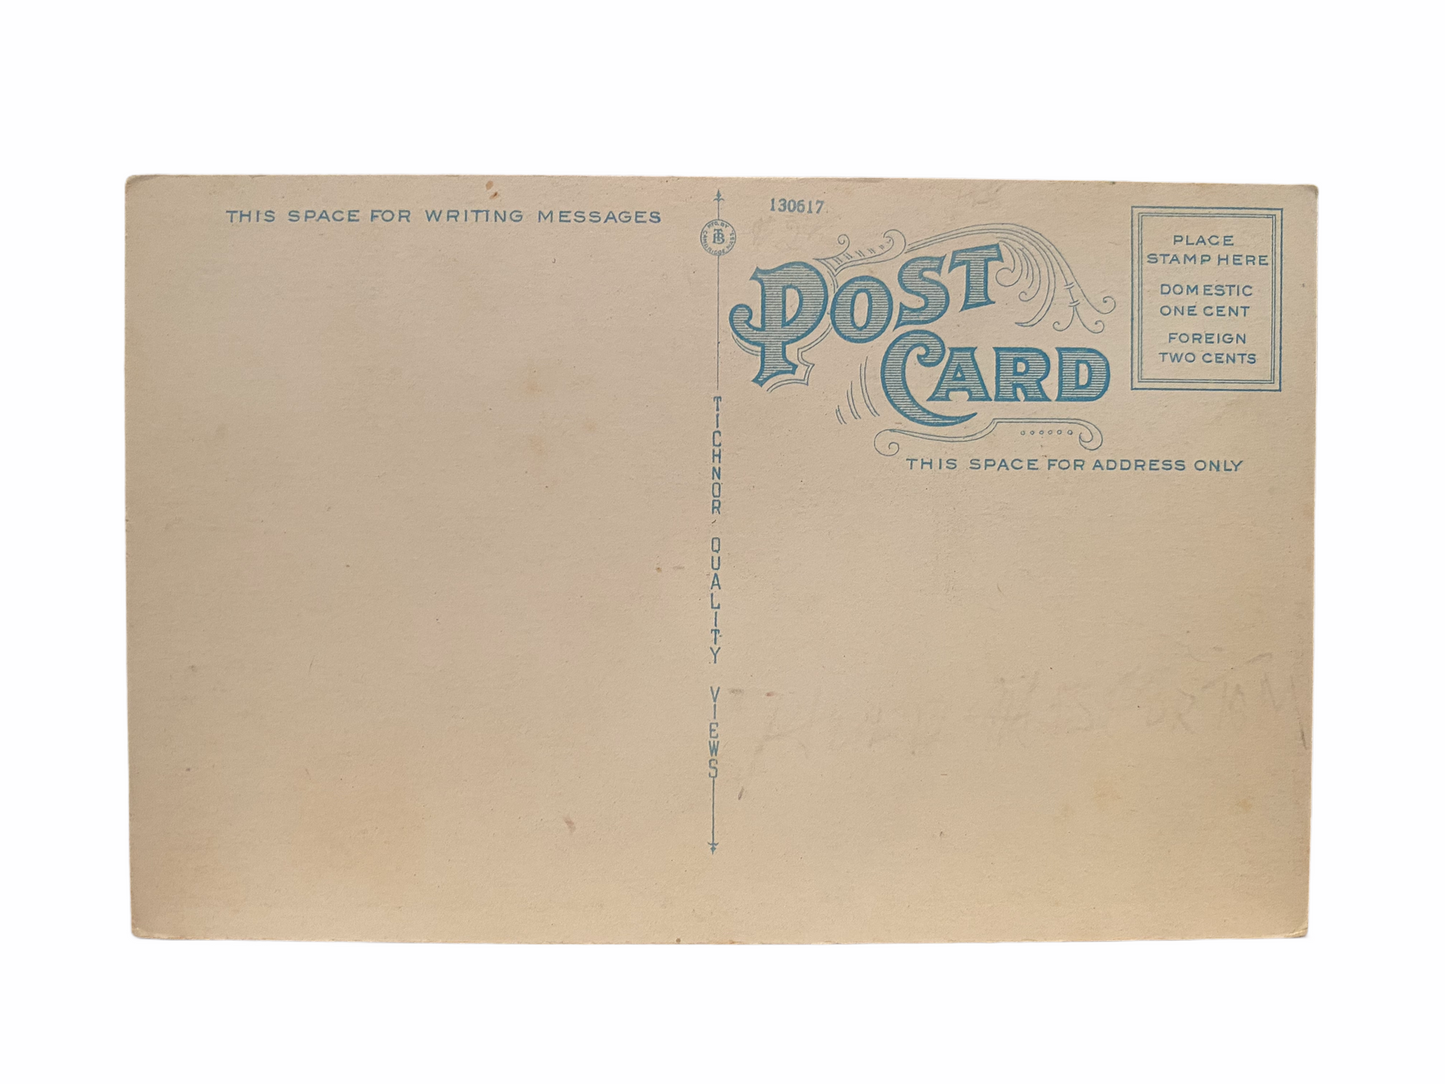 City Hall, Montpelier Vermont. Unused Postcard Circa 1915-1930